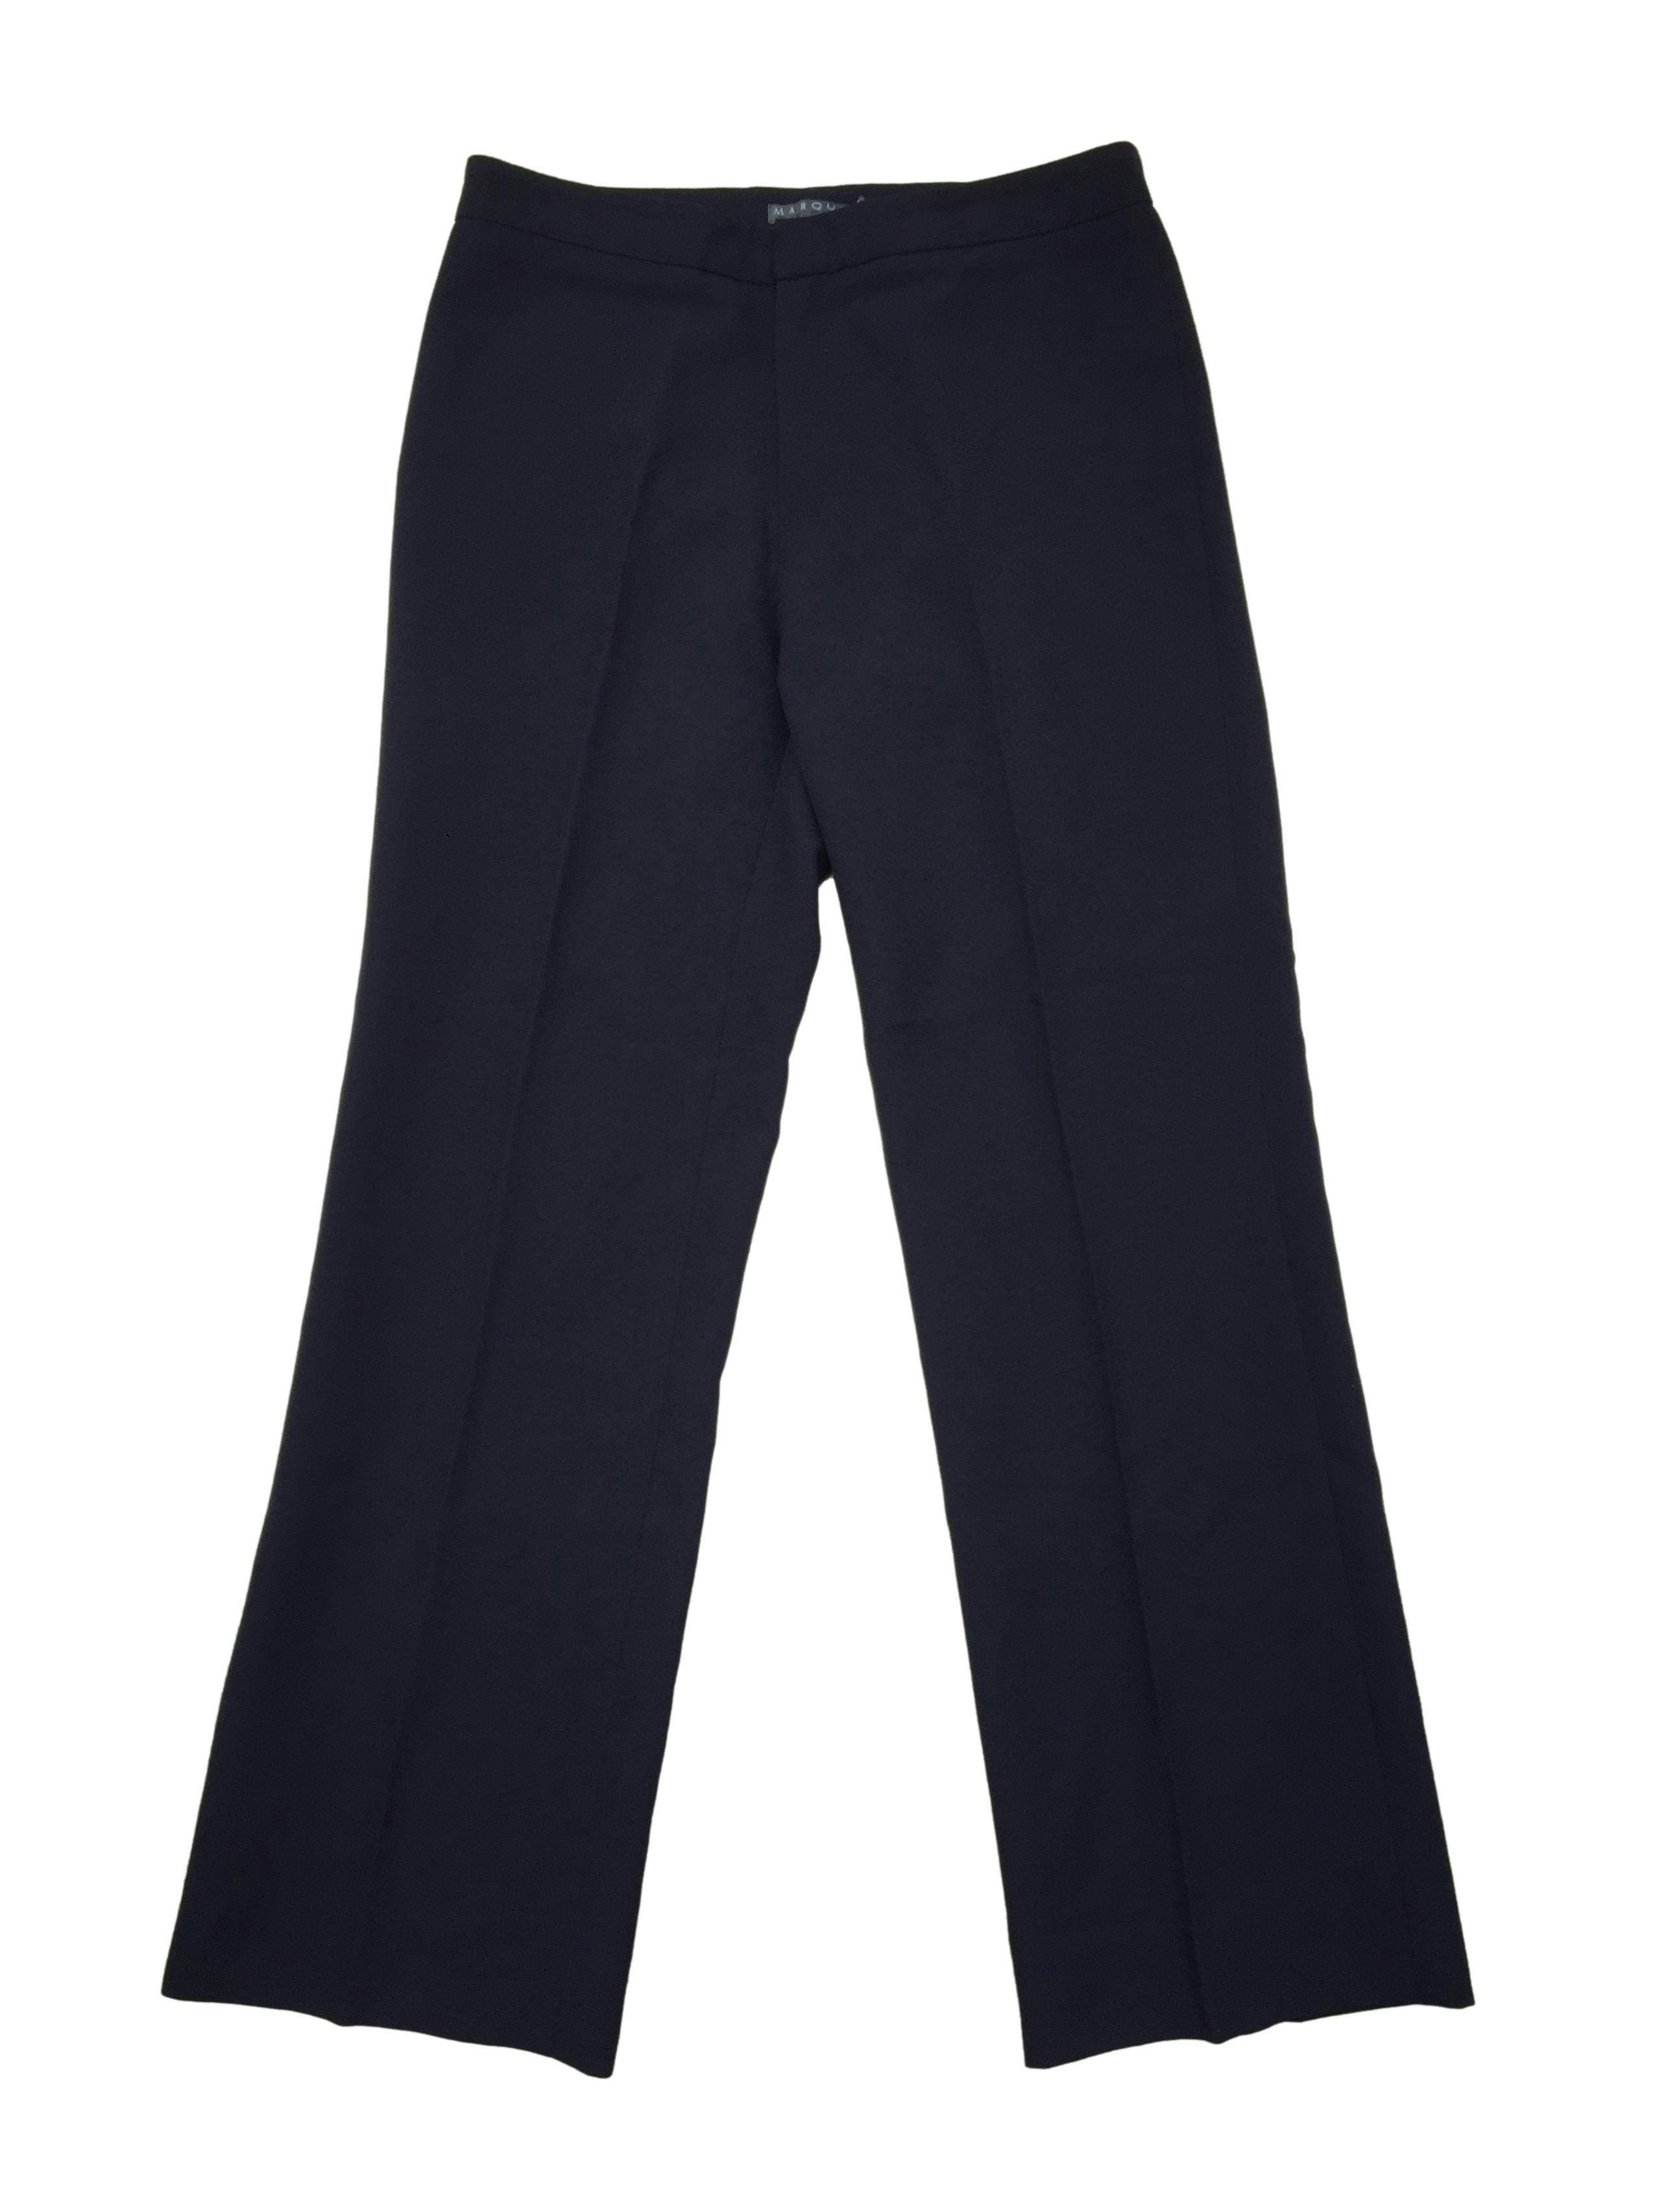 Pantalón de vestir Marquis azul marino, con cierre y corchete. Cintura 74cm, Largo 92cm.